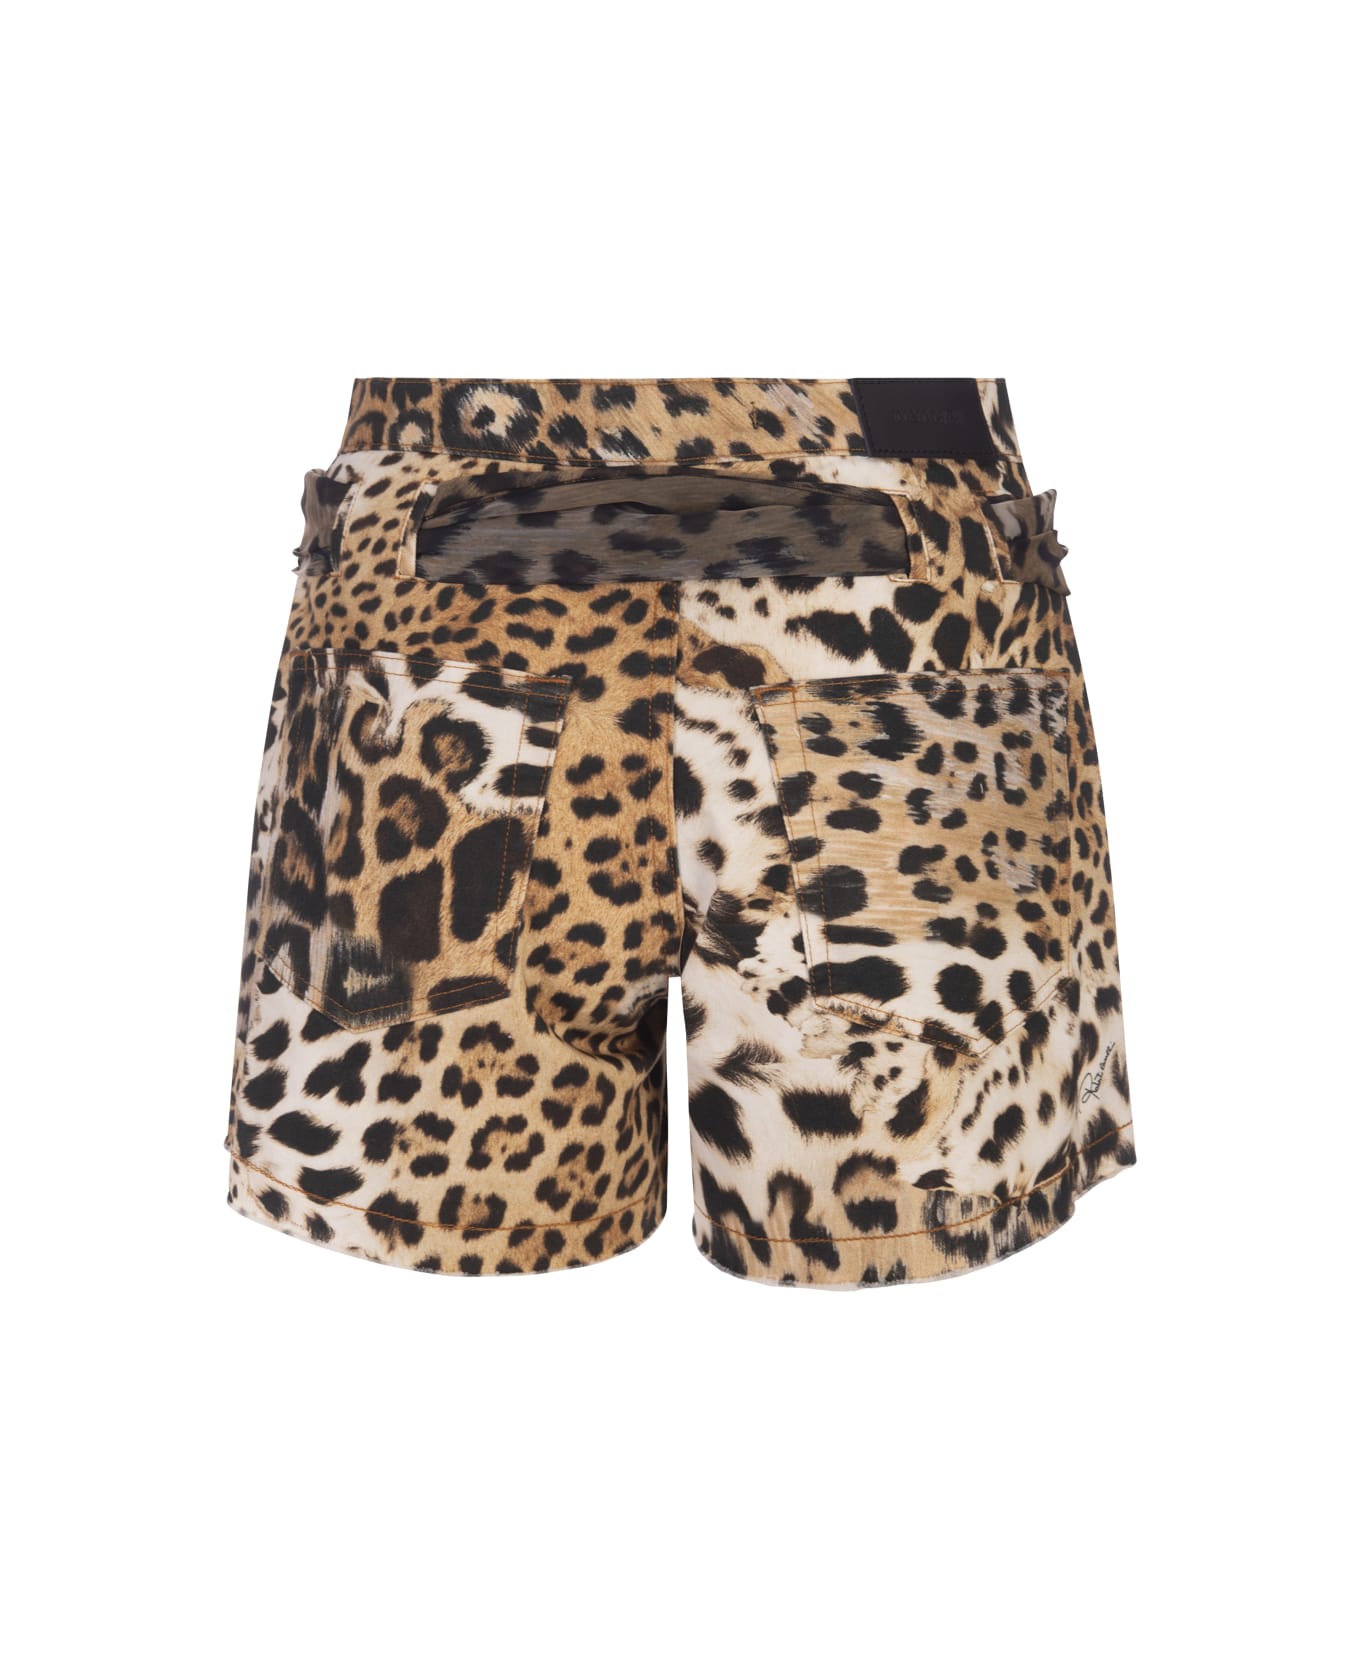 Roberto Cavalli Jaguar Skin Print Shorts - Brown